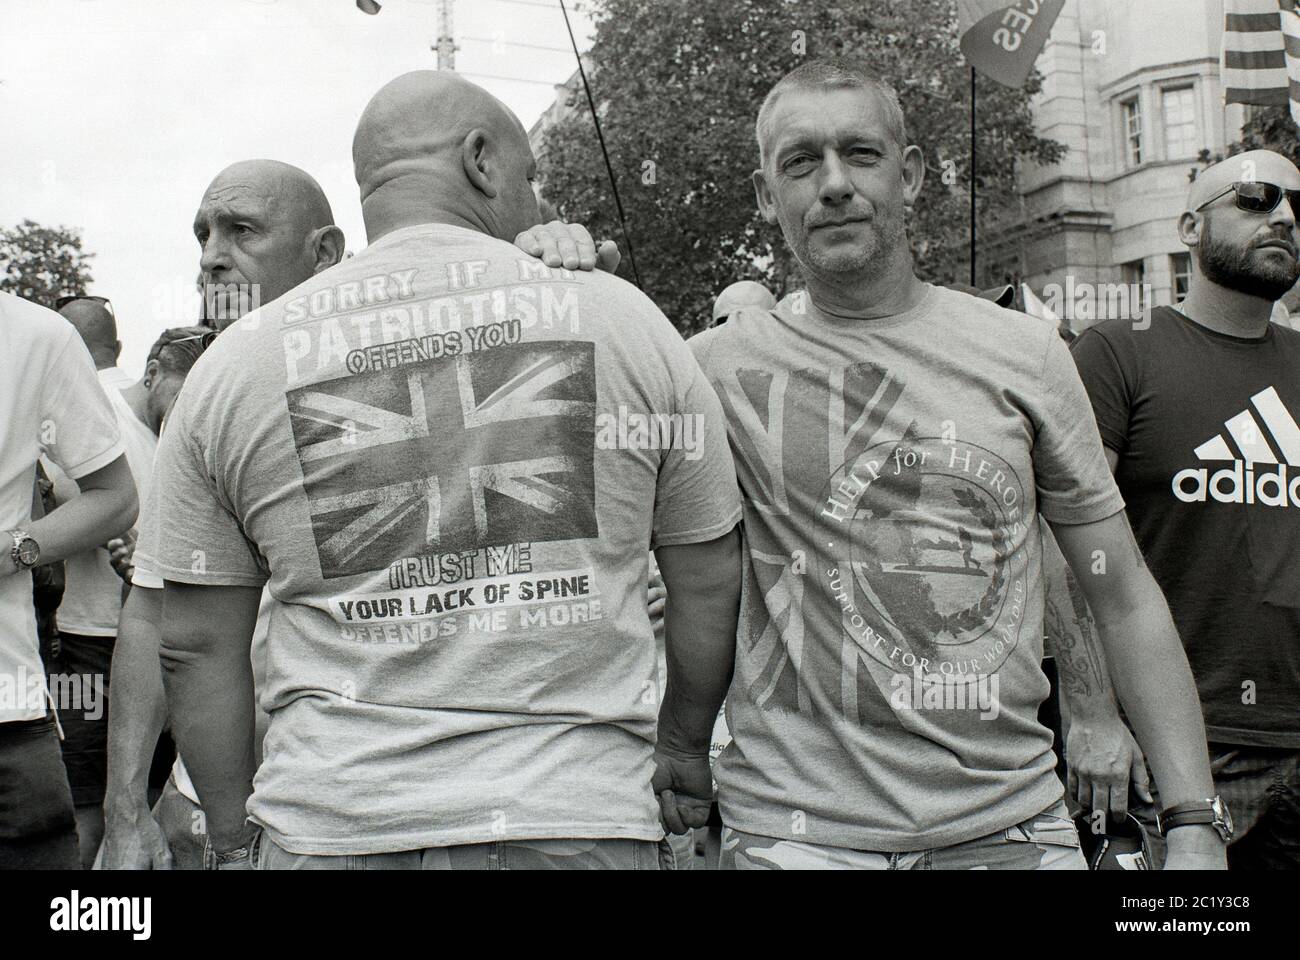 Free Tommy Robinson rally, Londra, Regno Unito. 14 luglio 2018 Foto Stock